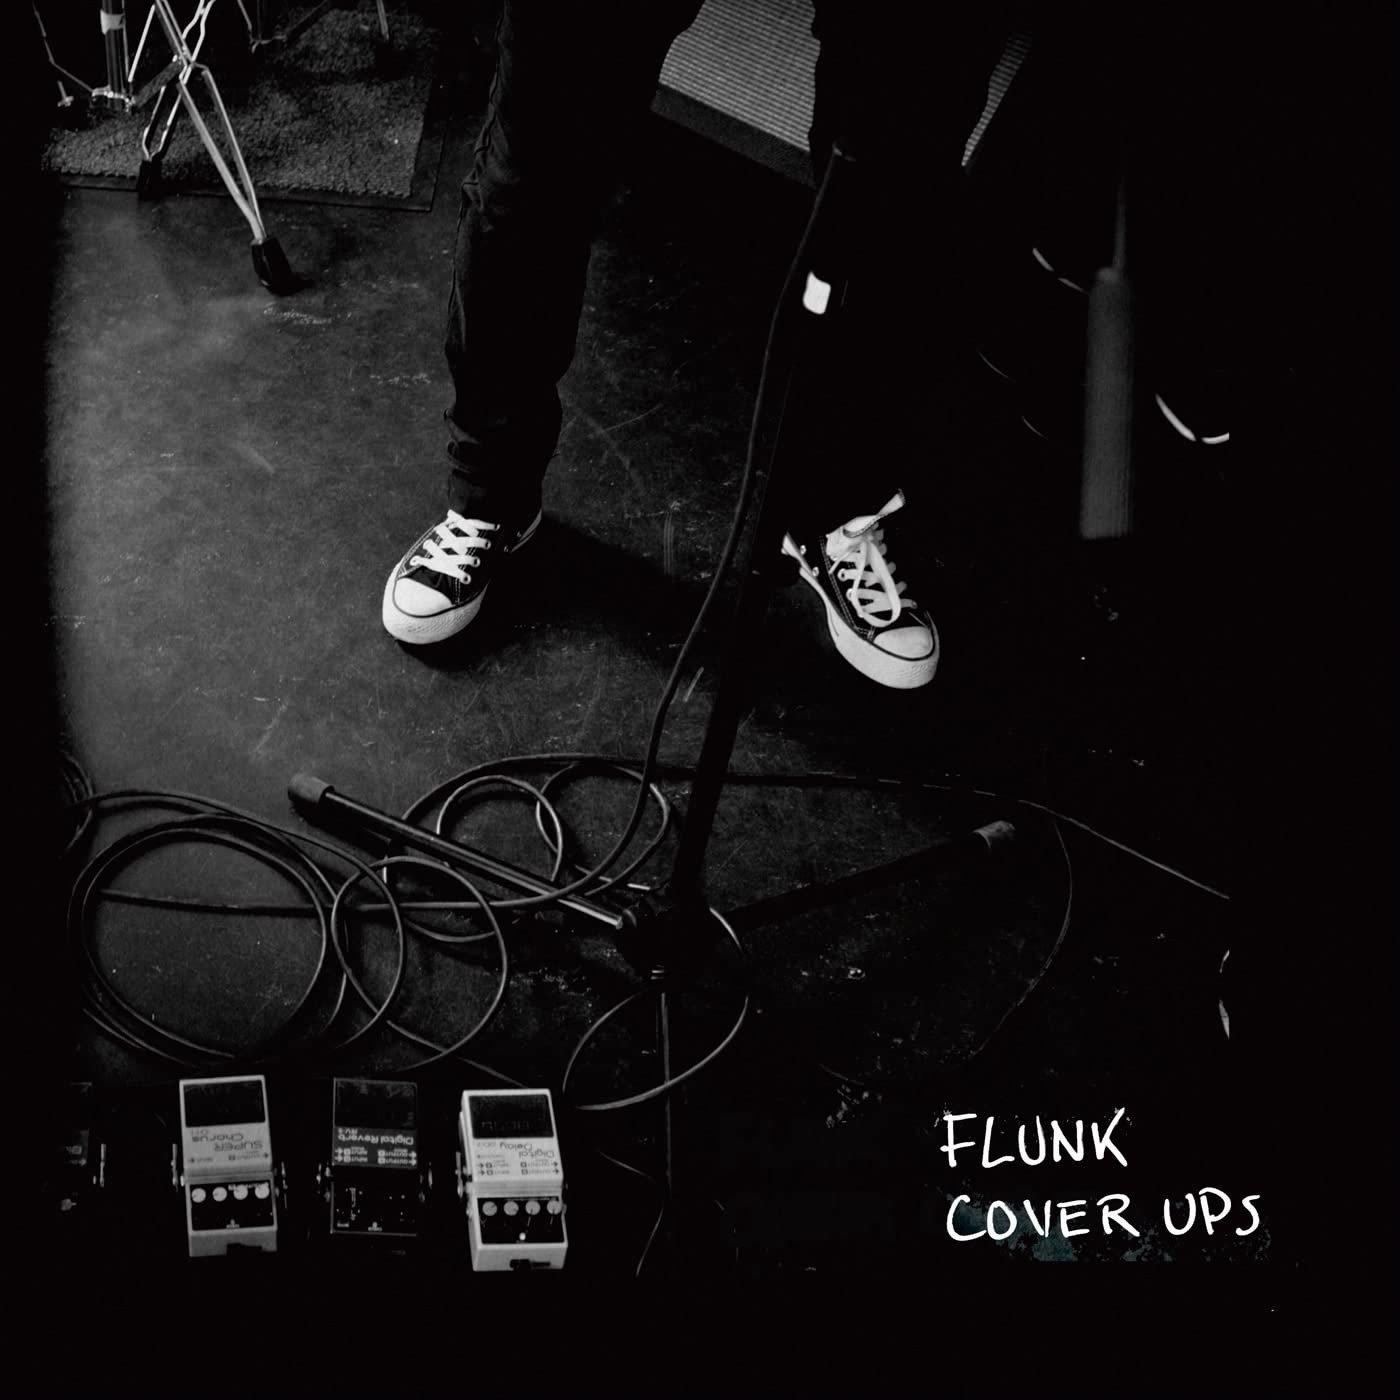 CD Shop - FLUNK COVER UPS, VOL 1 & 2